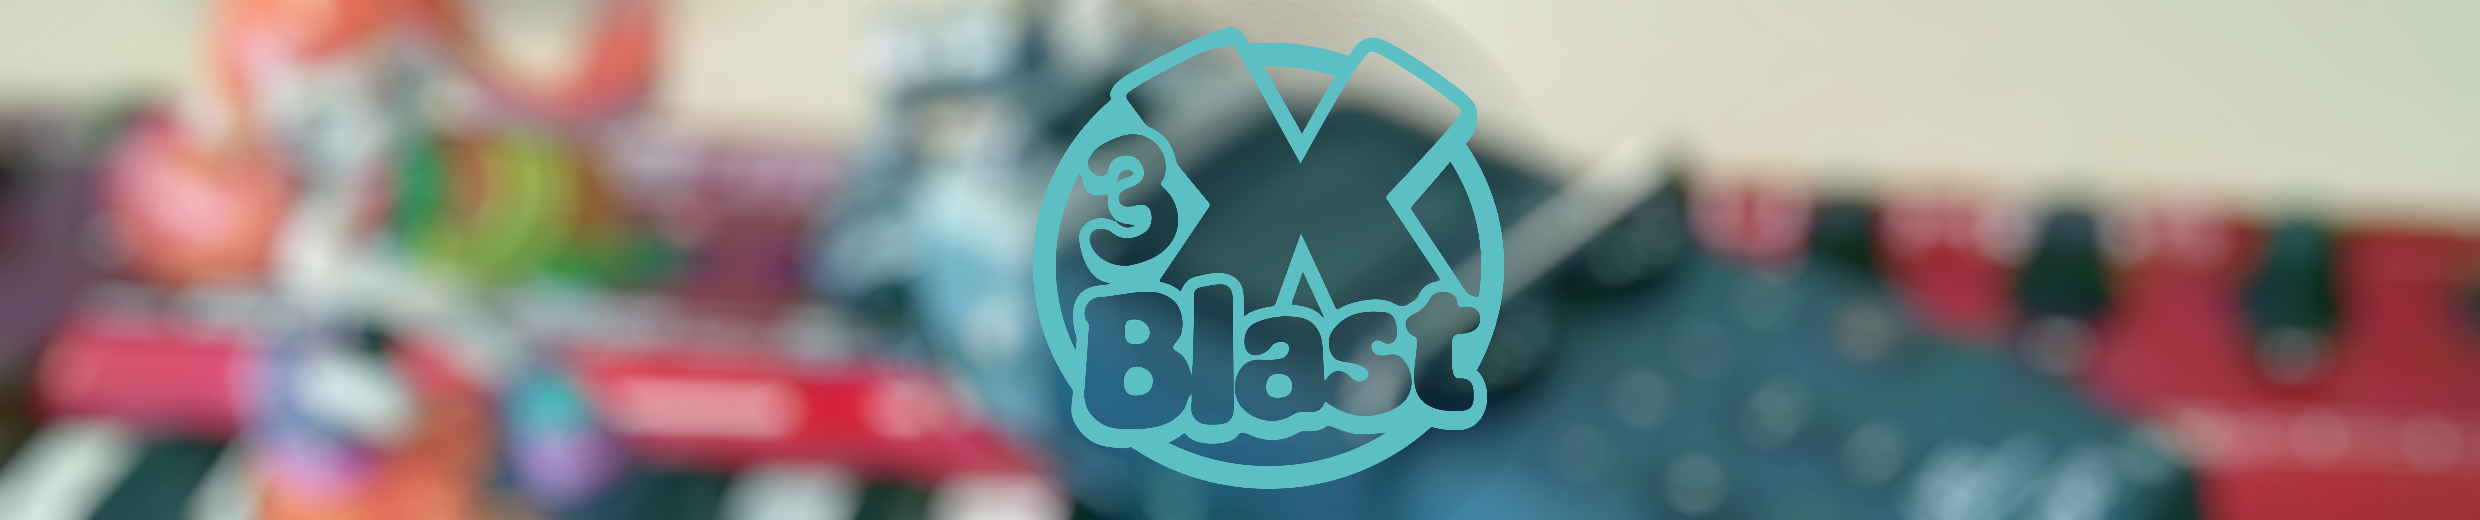 3xBlast - Free Music Pack